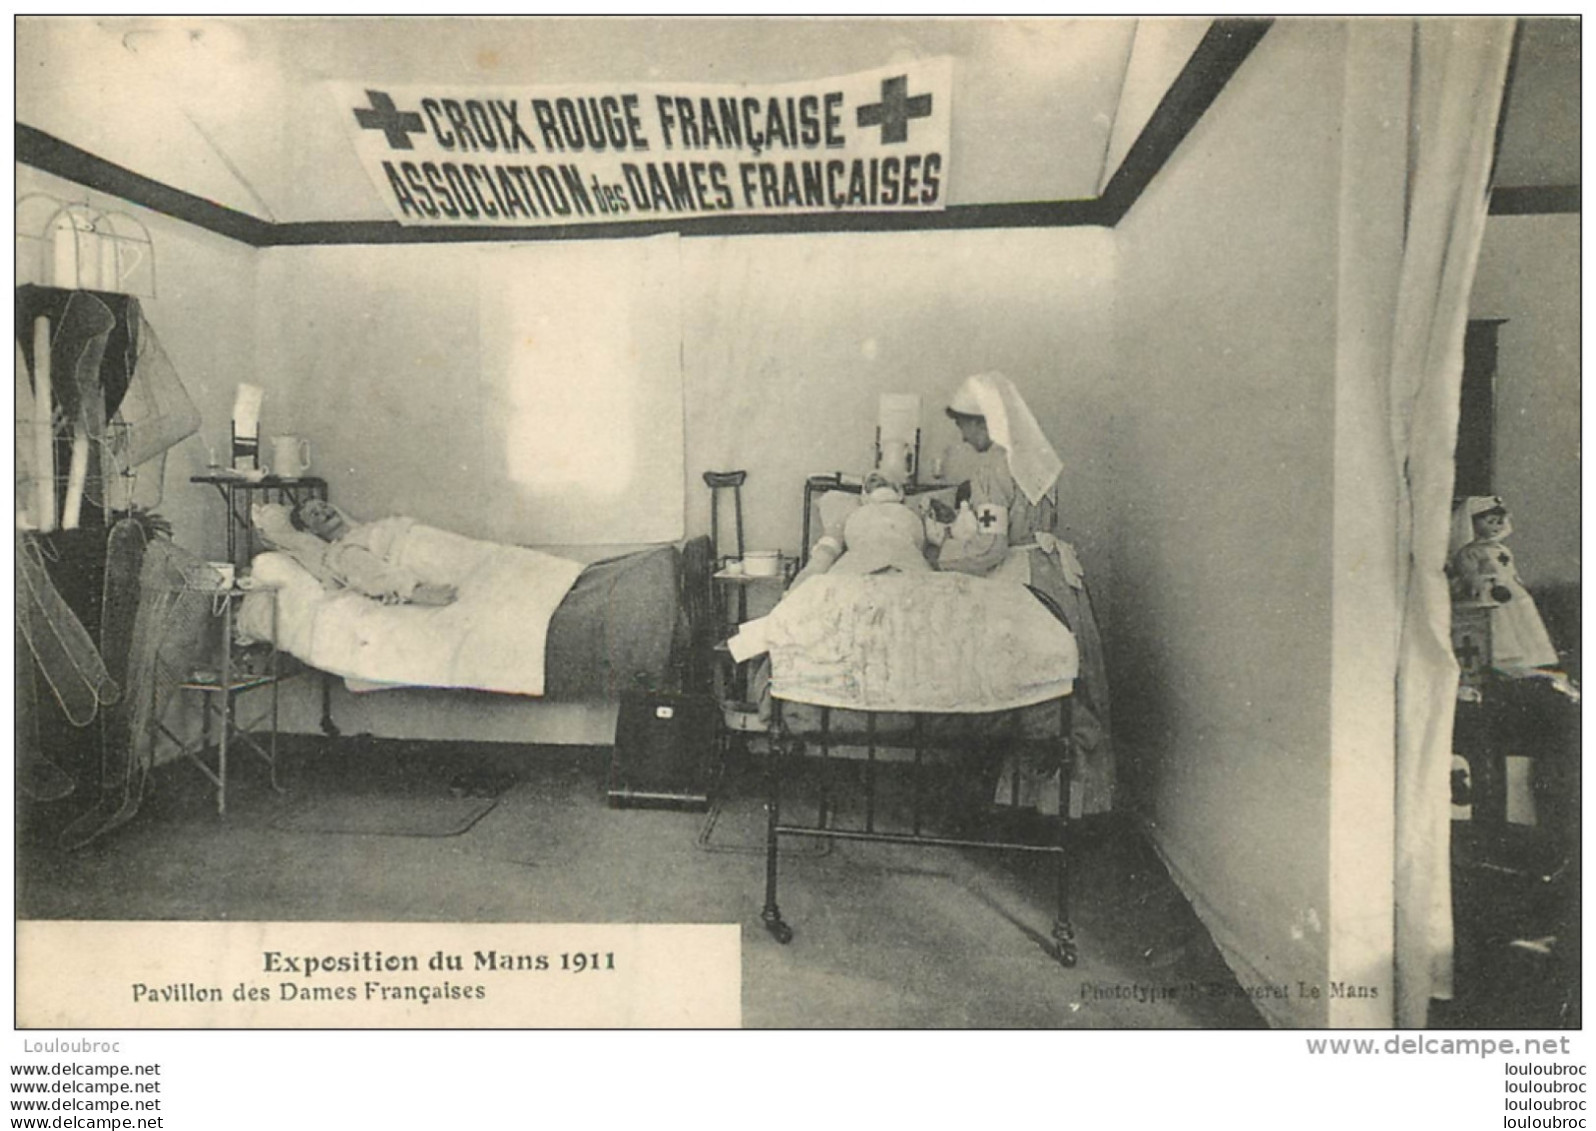 CROIX ROUGE FRANCAISE ASSOCIATION DES DAMES FRANCAISES EXPOSITION DU MANS 1911 PAVILLON DES DAMES FRANCAISES - Gesundheit